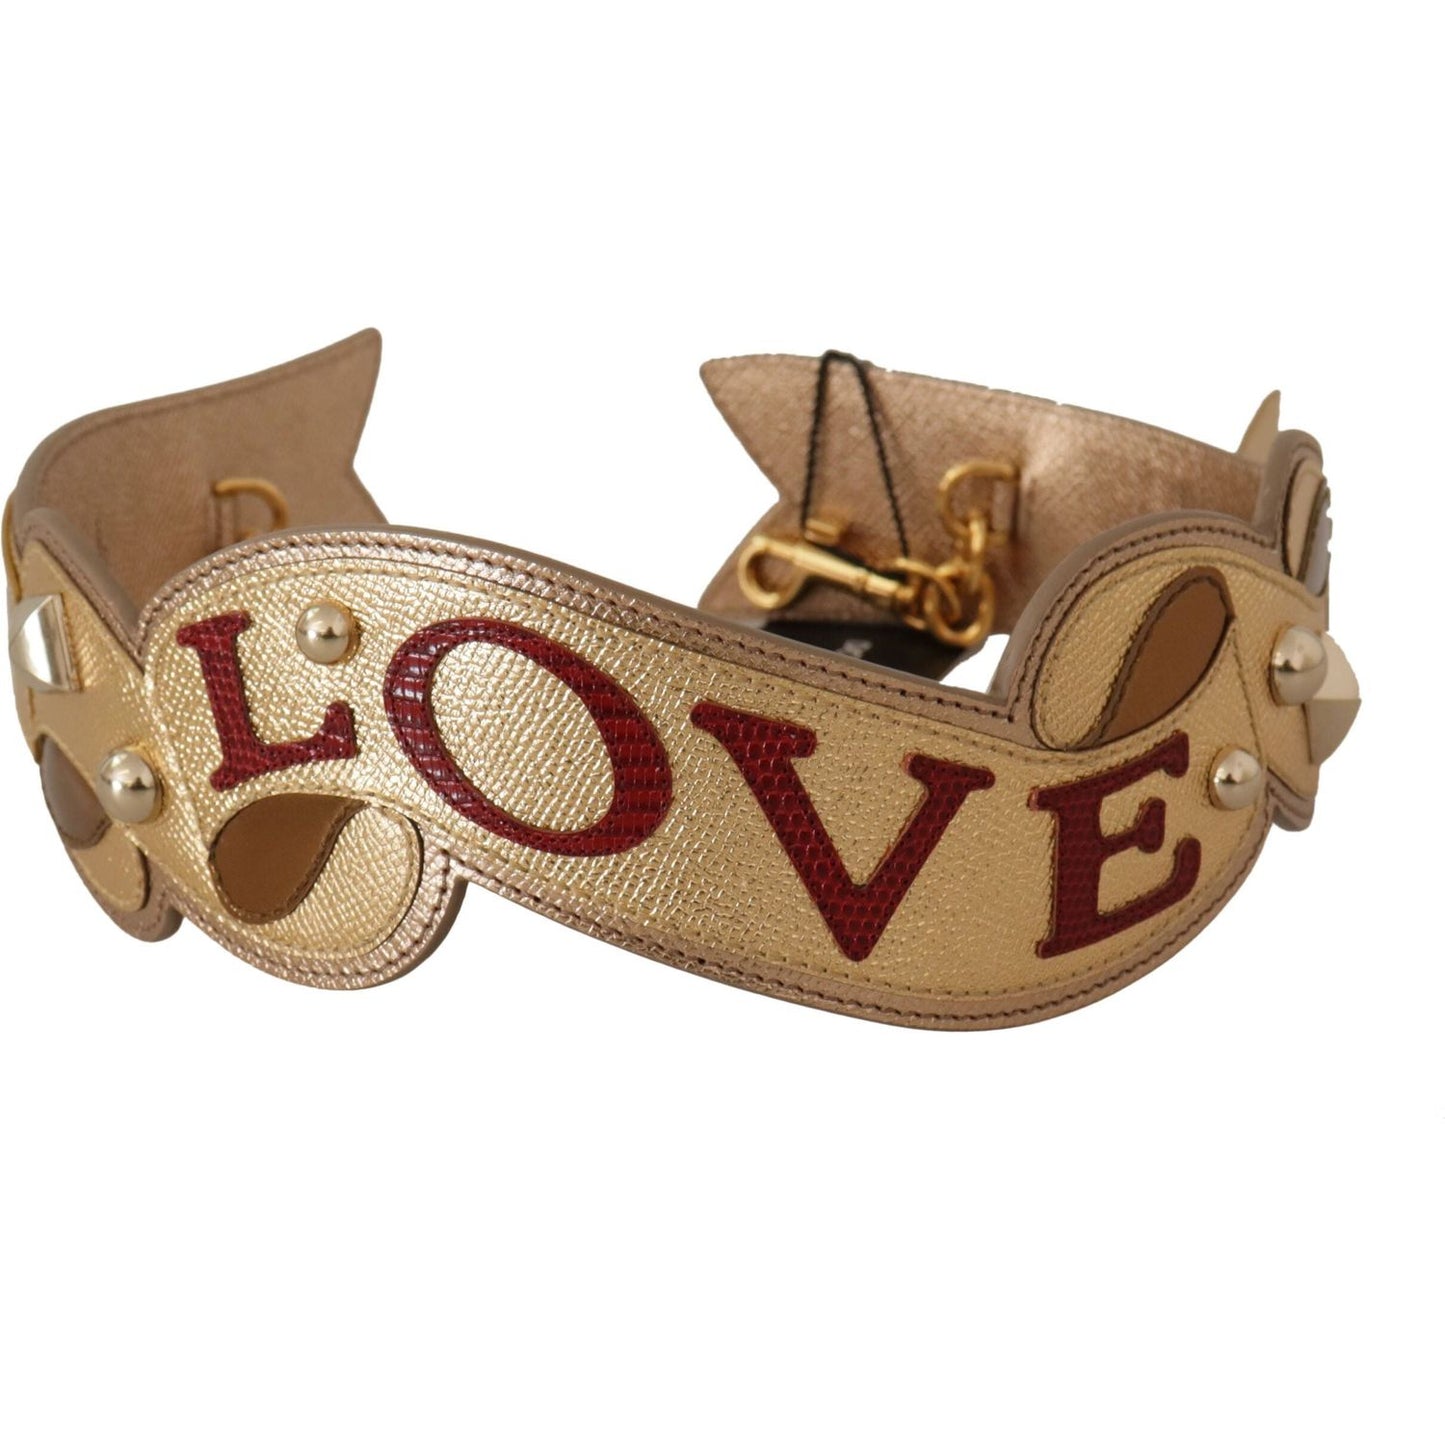 Dolce & Gabbana Elegant Gold Leather Shoulder Strap gold-leather-love-patch-bag-shoulder-strap IMG_9642-1-scaled-d16a91ee-0ca.jpg